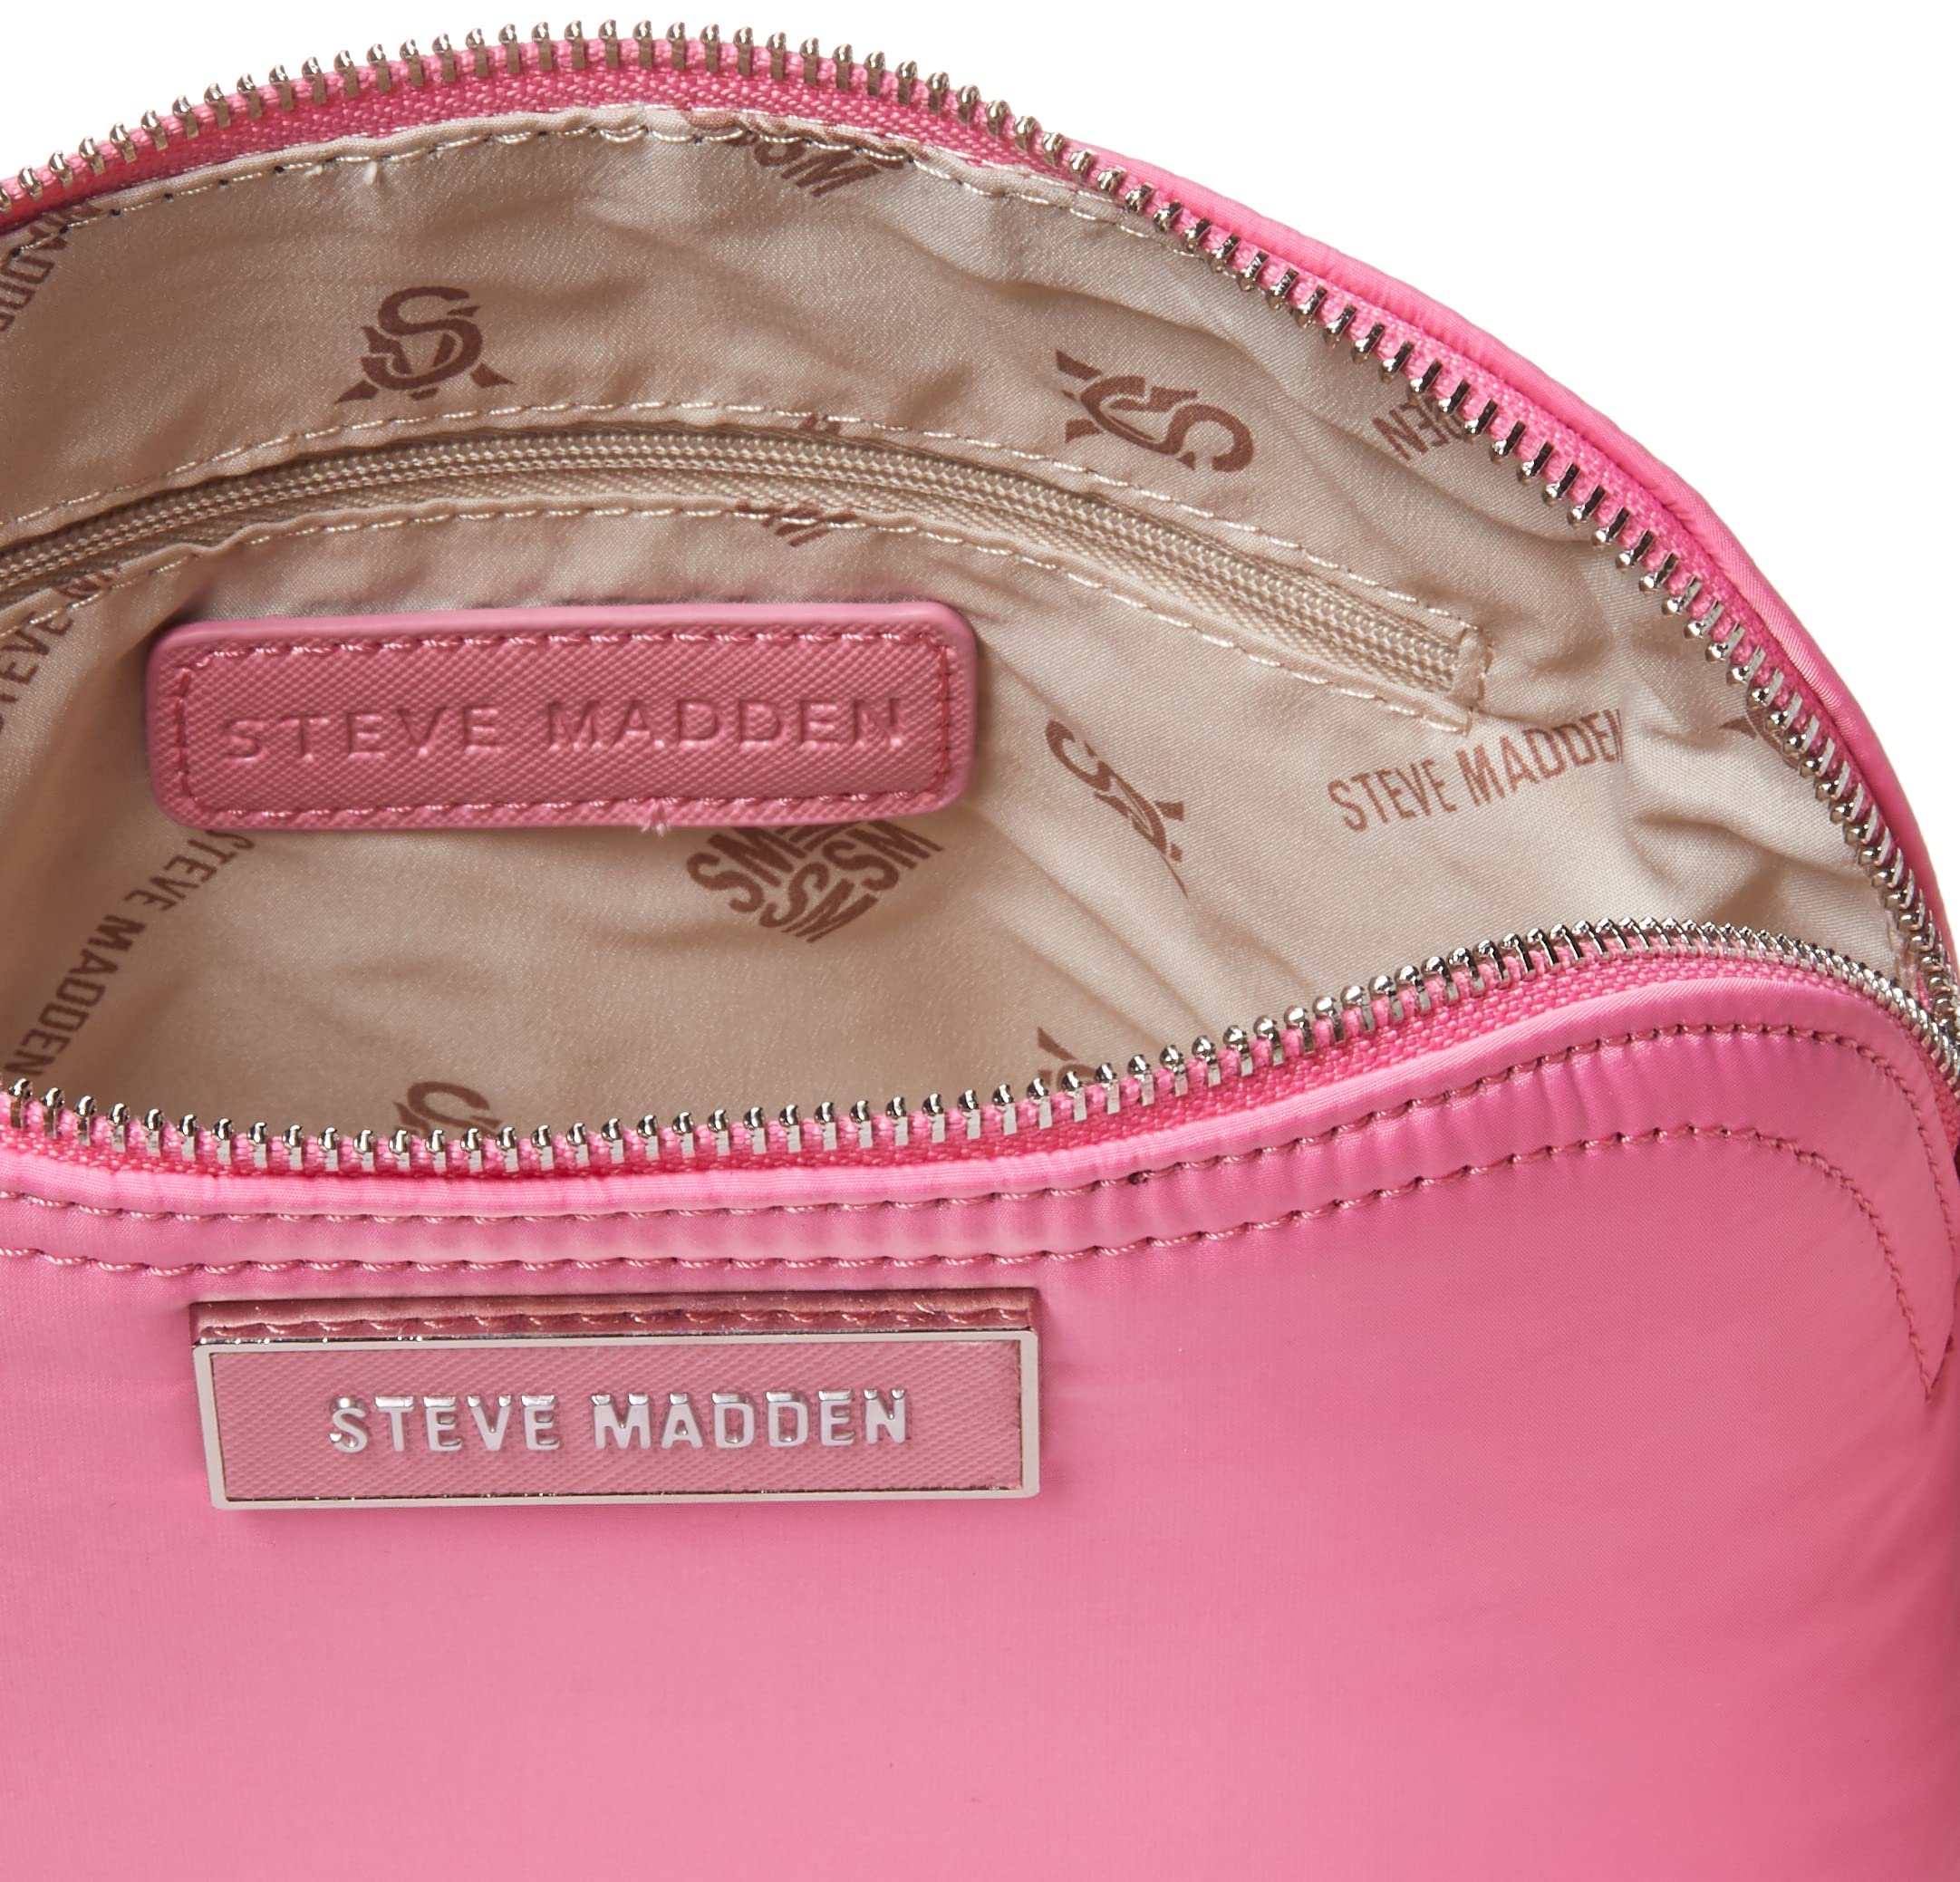 Steve Madden Daren Nylon Dome Crossbody Bag, Light Pink